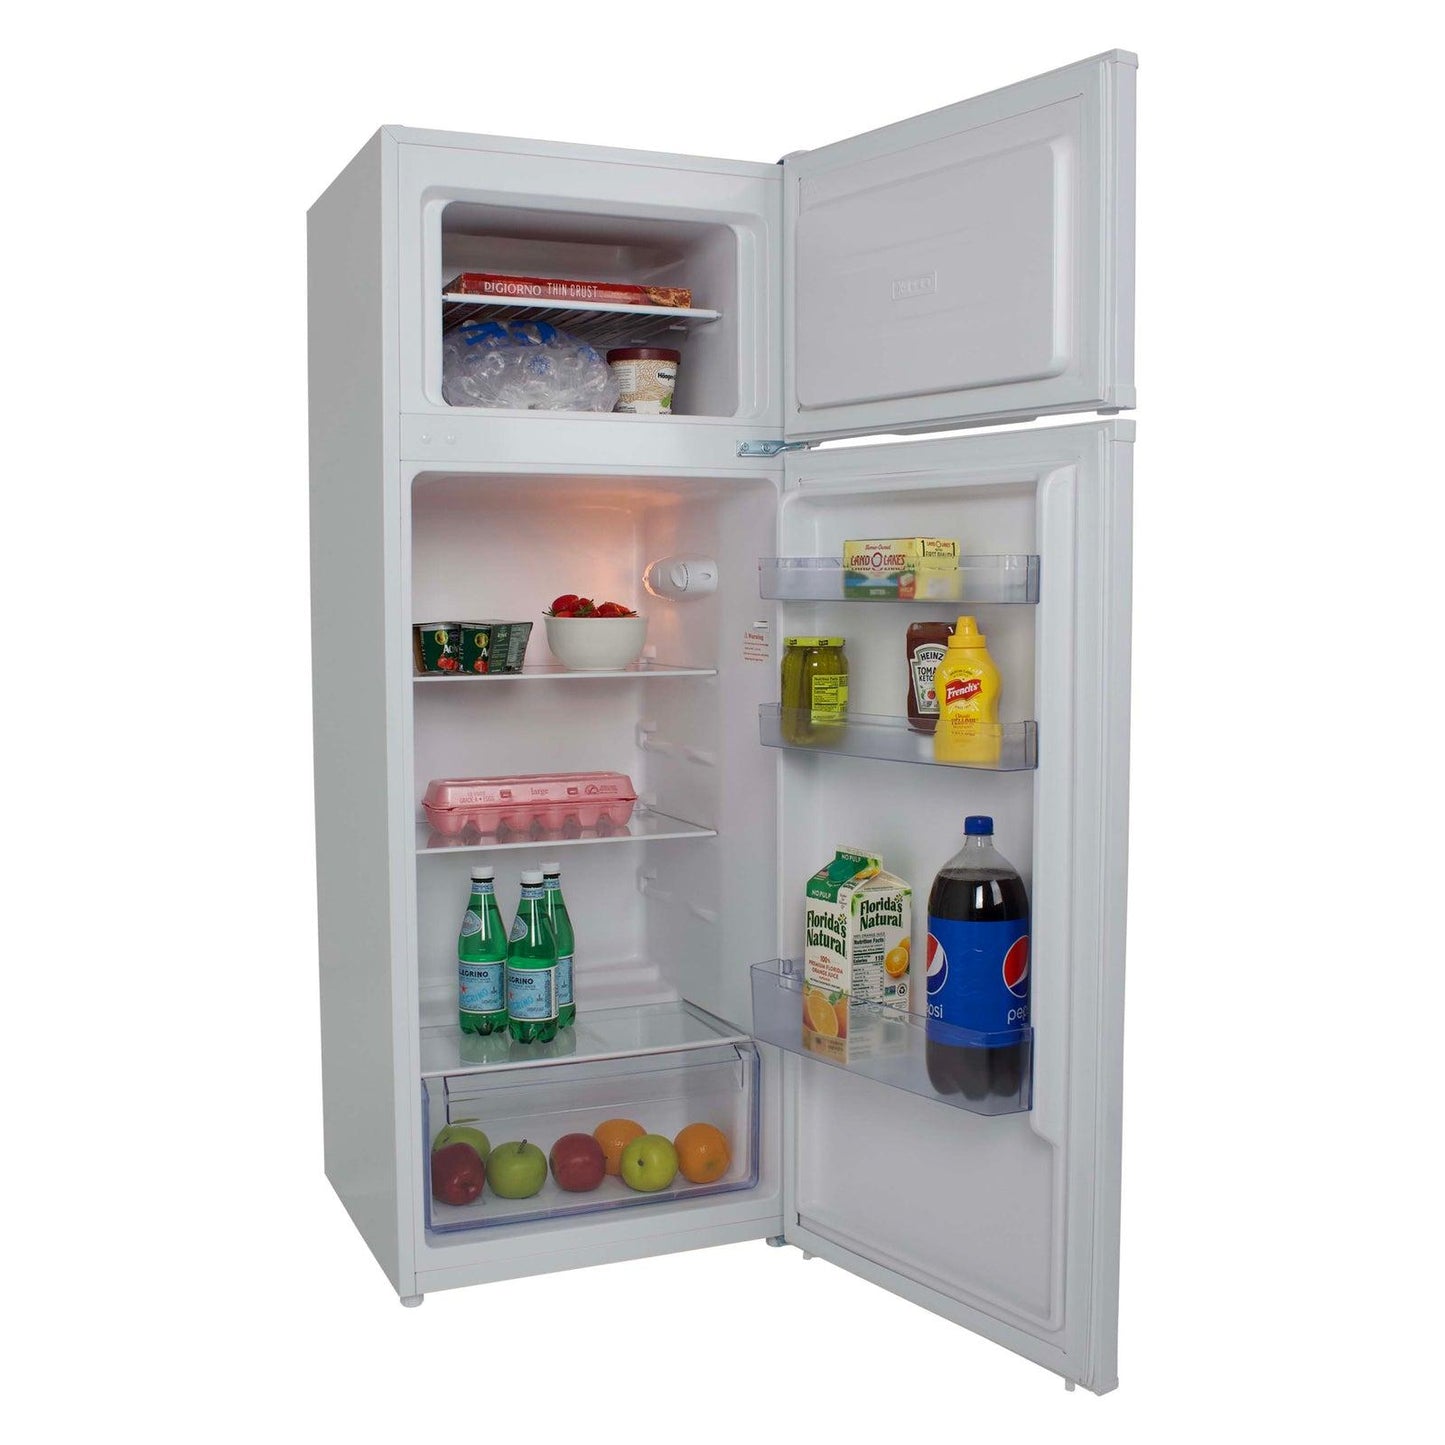 Avanti RA730B0W 7.3 Cu. Ft. Apartment Size Refrigerator